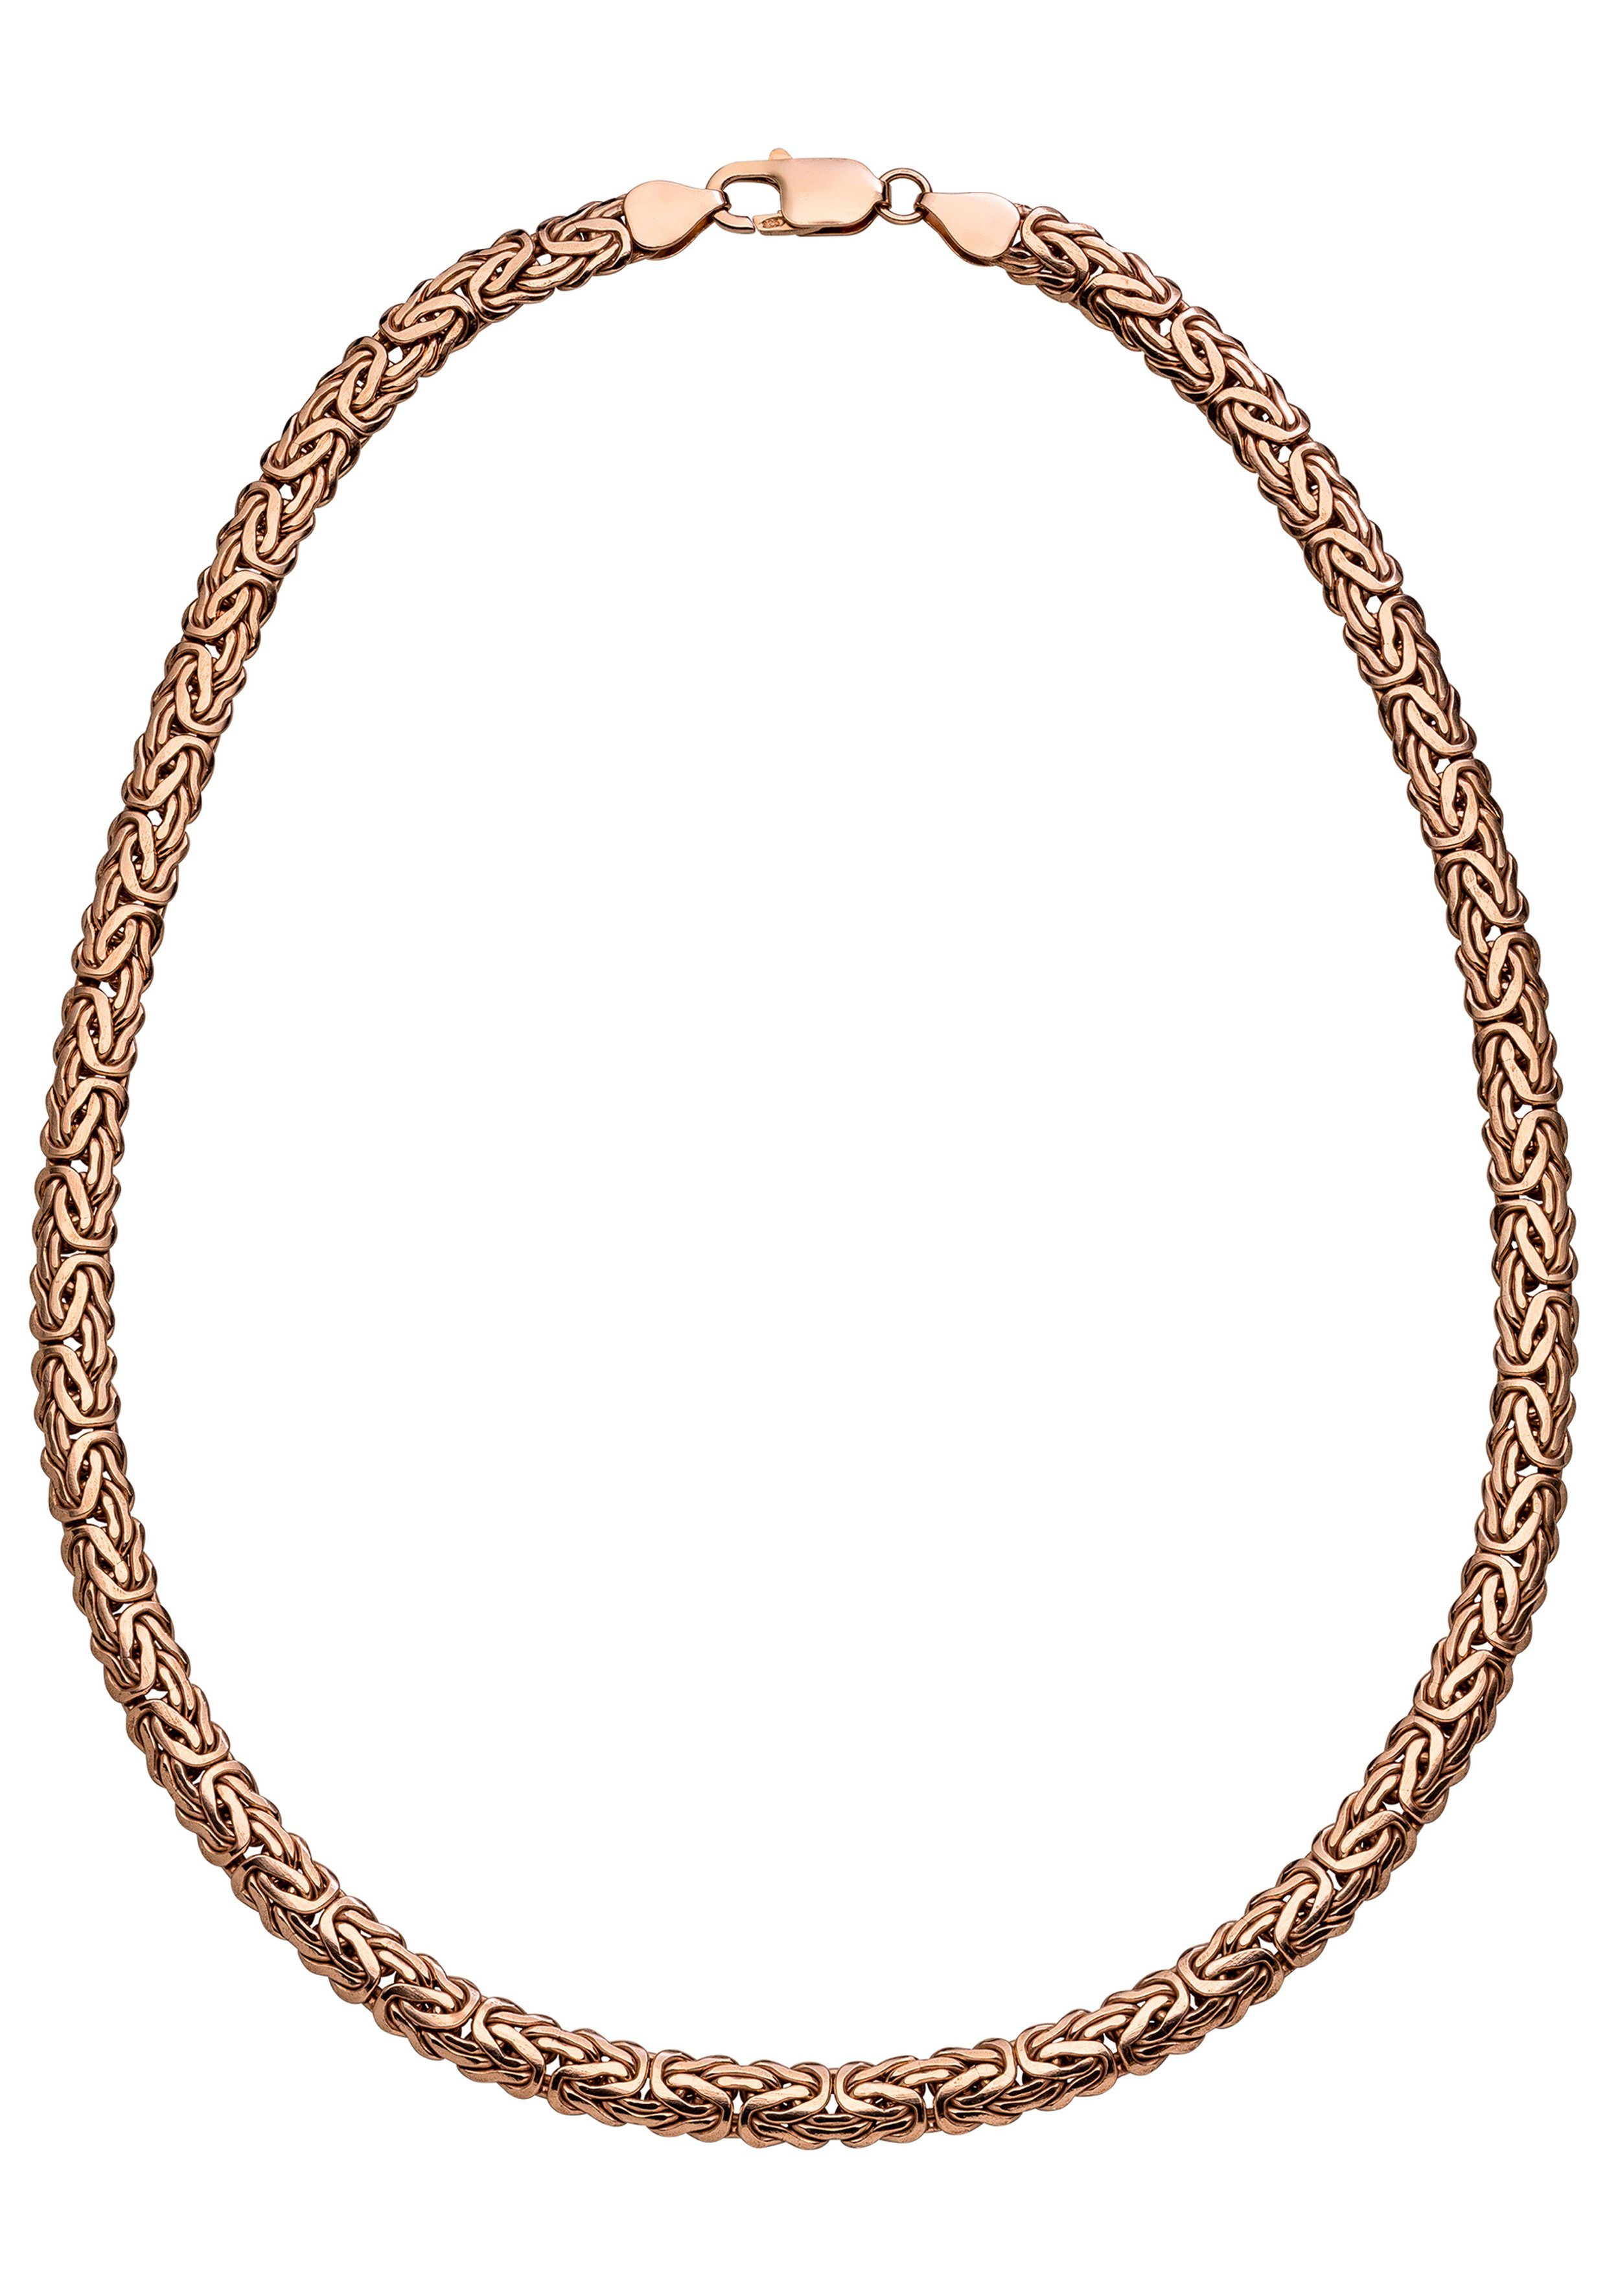 JOBO Kette ohne Anhänger, Königskette 925 Silber roségold vergoldet 45 cm  online kaufen | OTTO